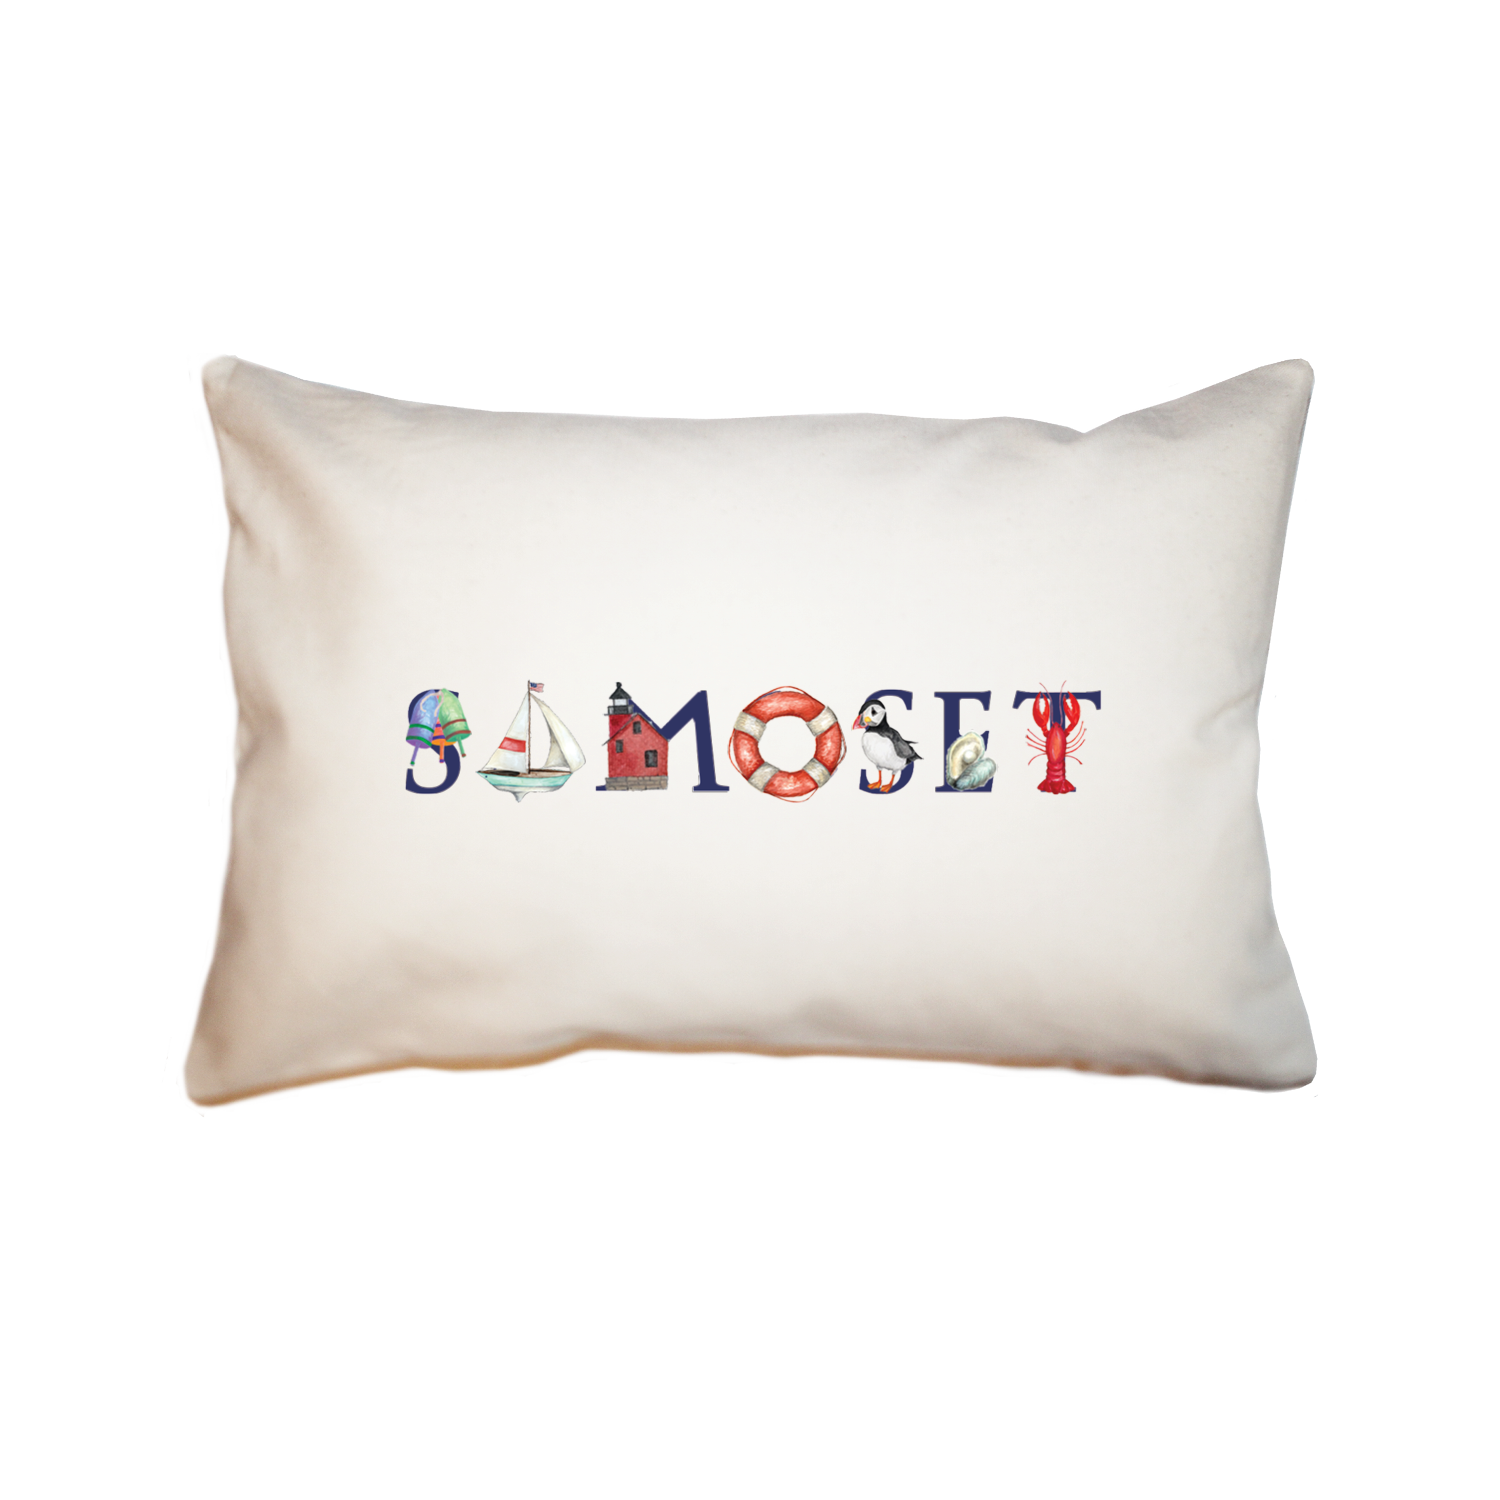 samoset large rectangle pillow